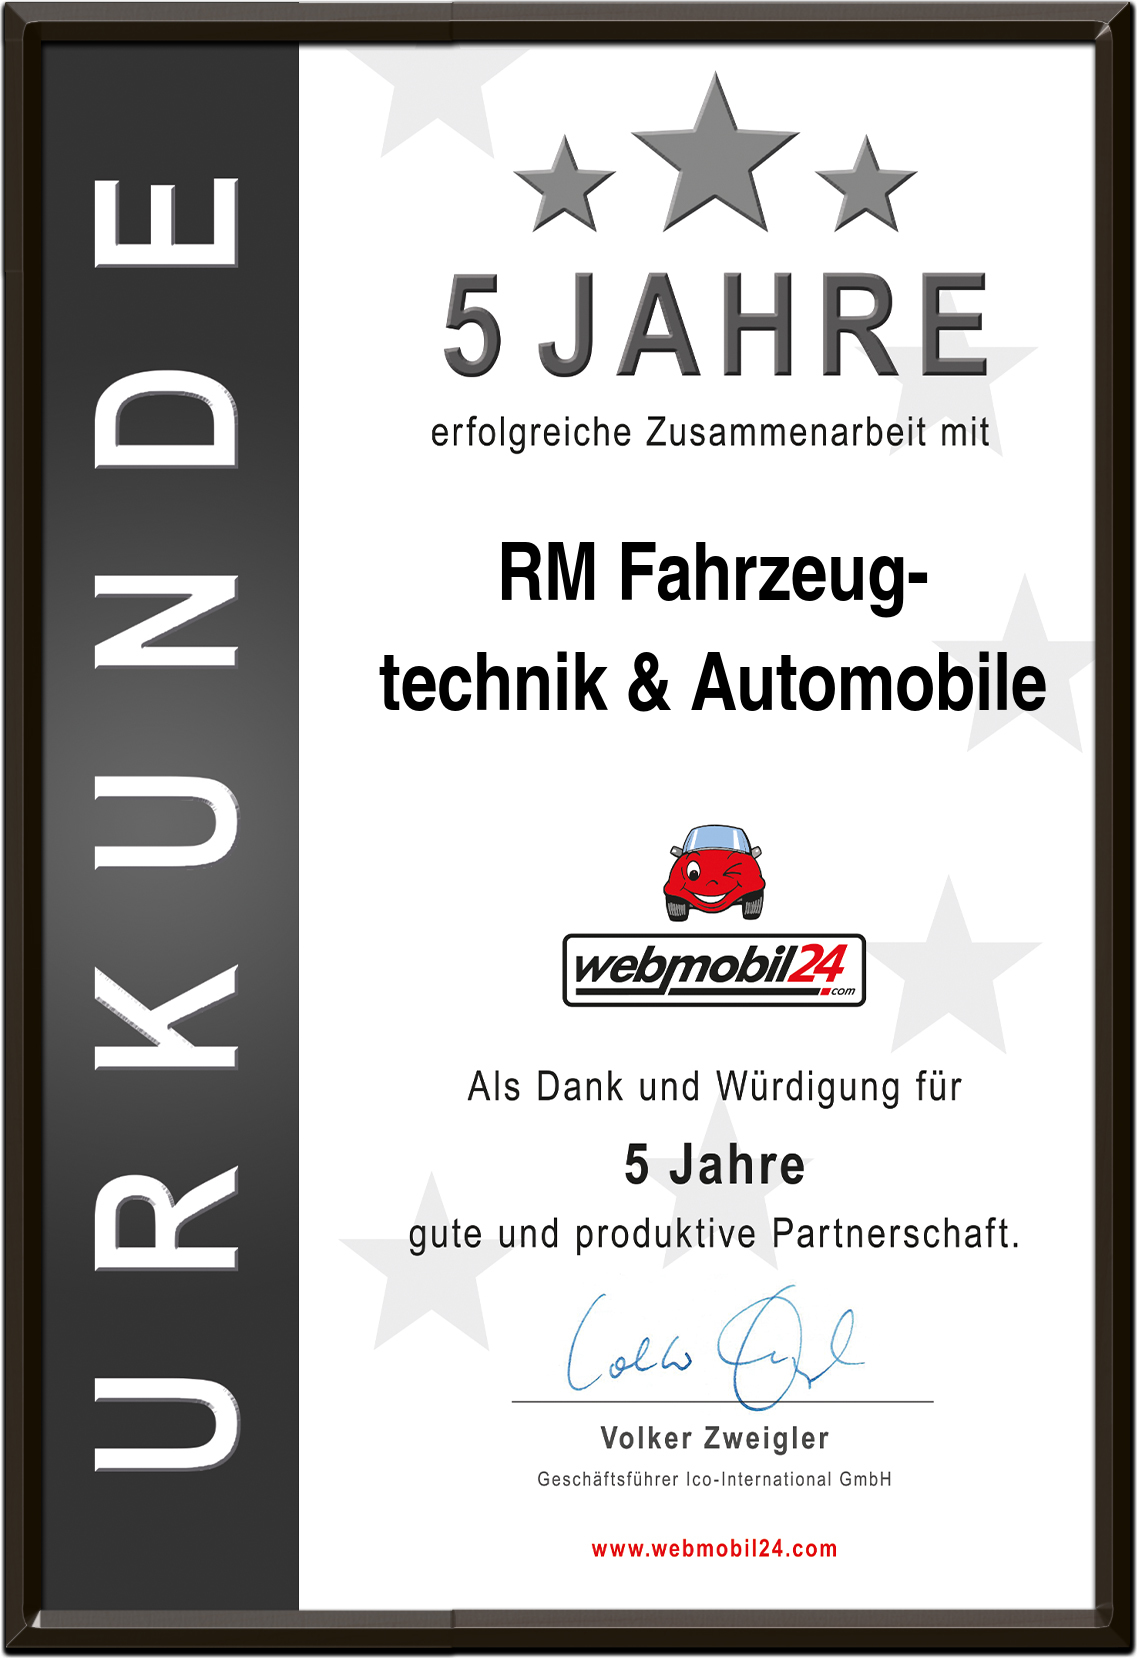 RM Fahrzeug- technik & Automobile